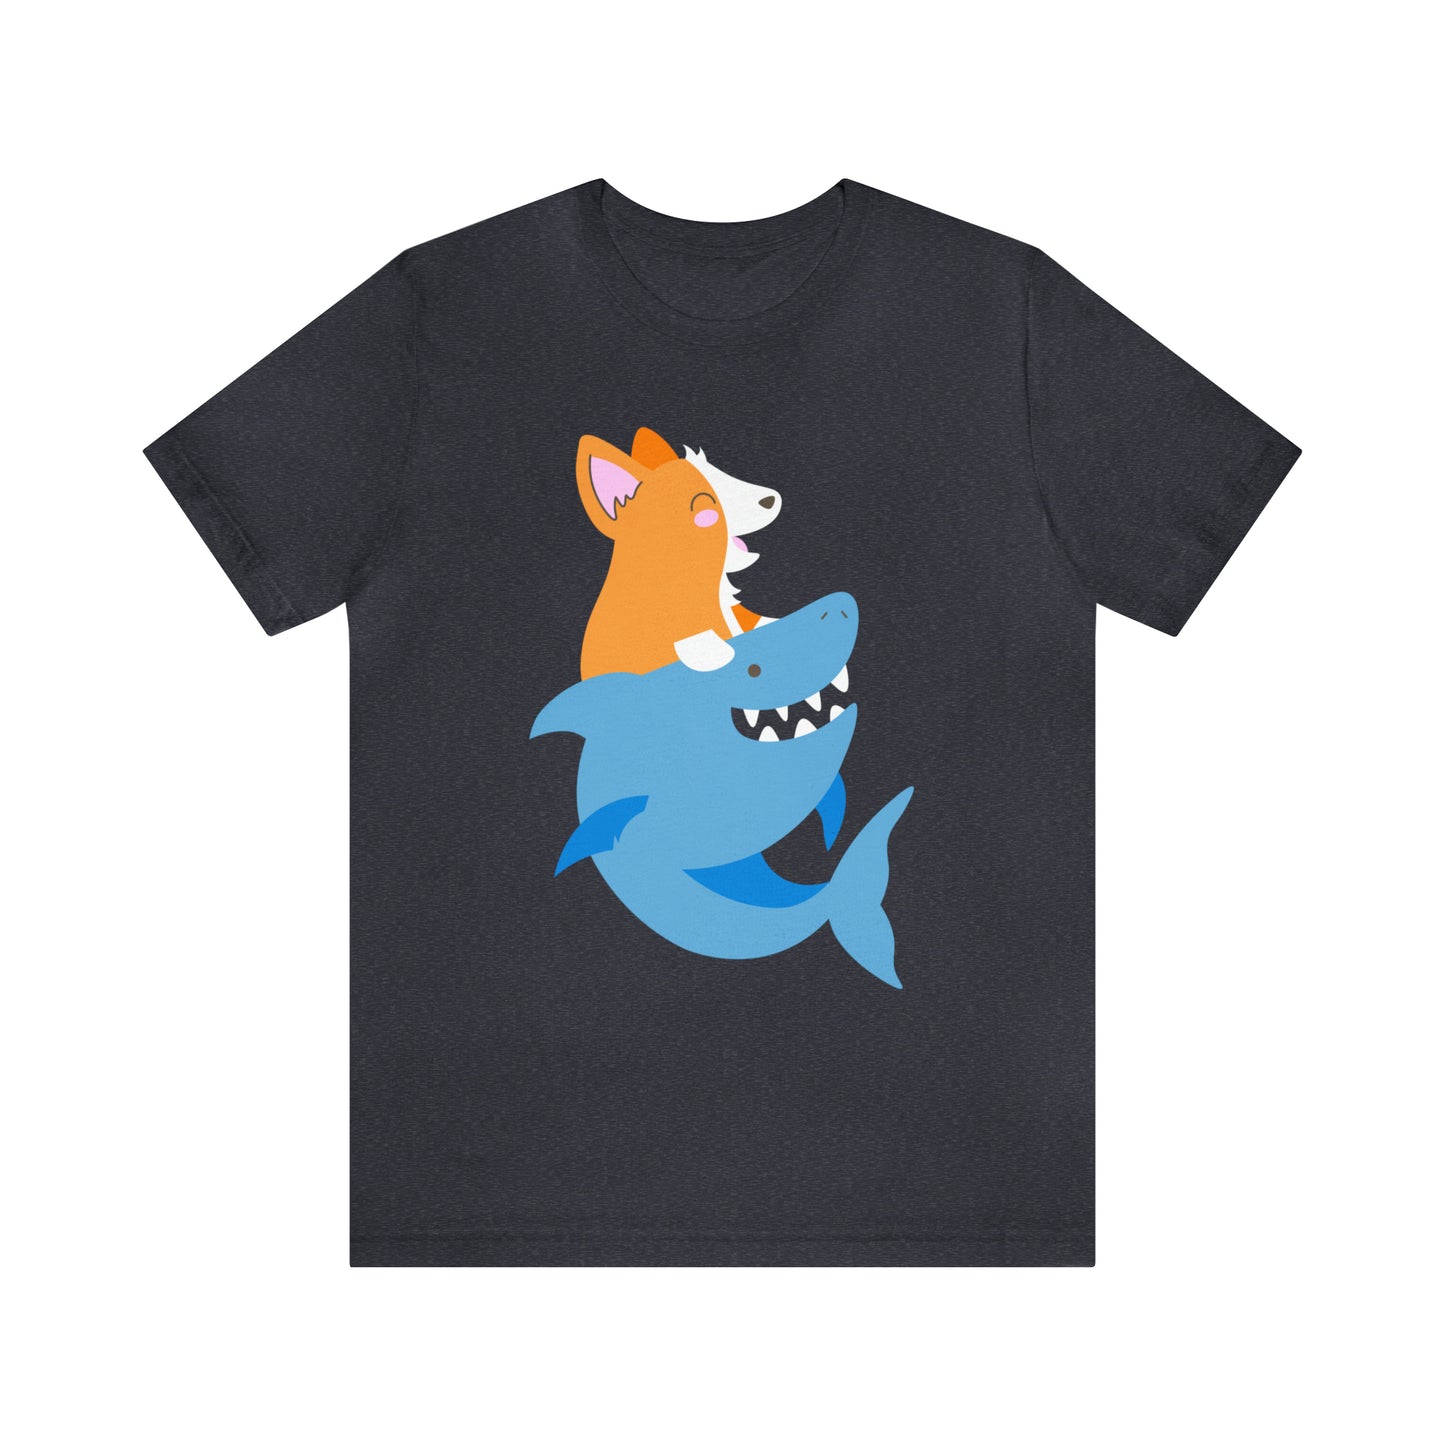 blue navy corgi dog shark fish woman man t-shirt unisex short sleeve shirt